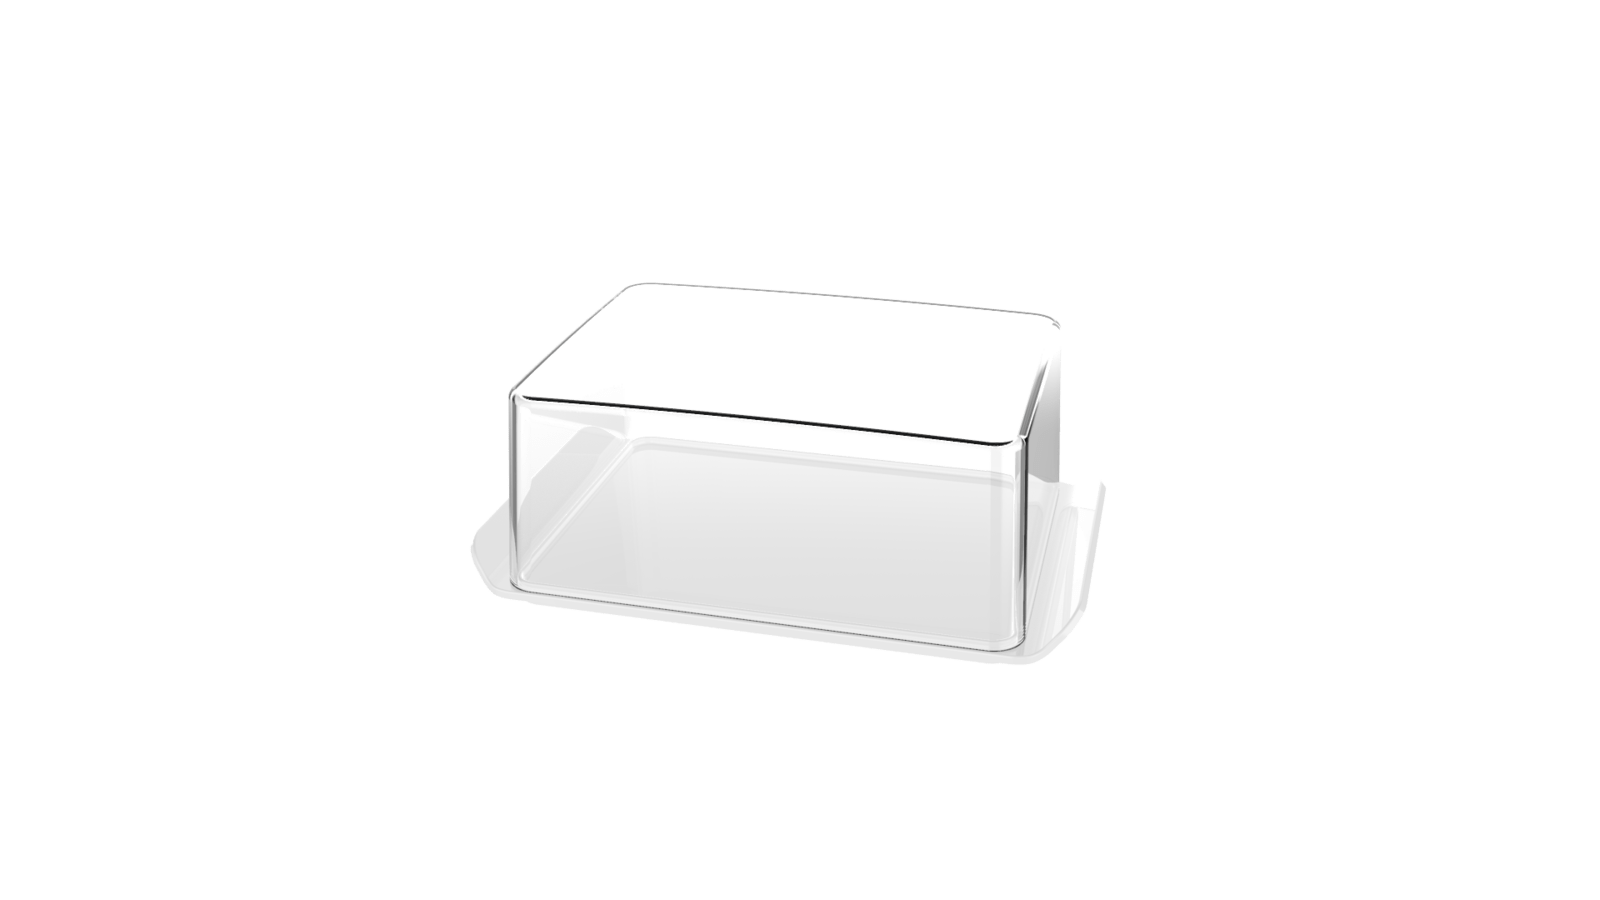 ORIGINAL Butterdose Dose transparent für 250g Kühlschrank Bosch Siemens 086166 